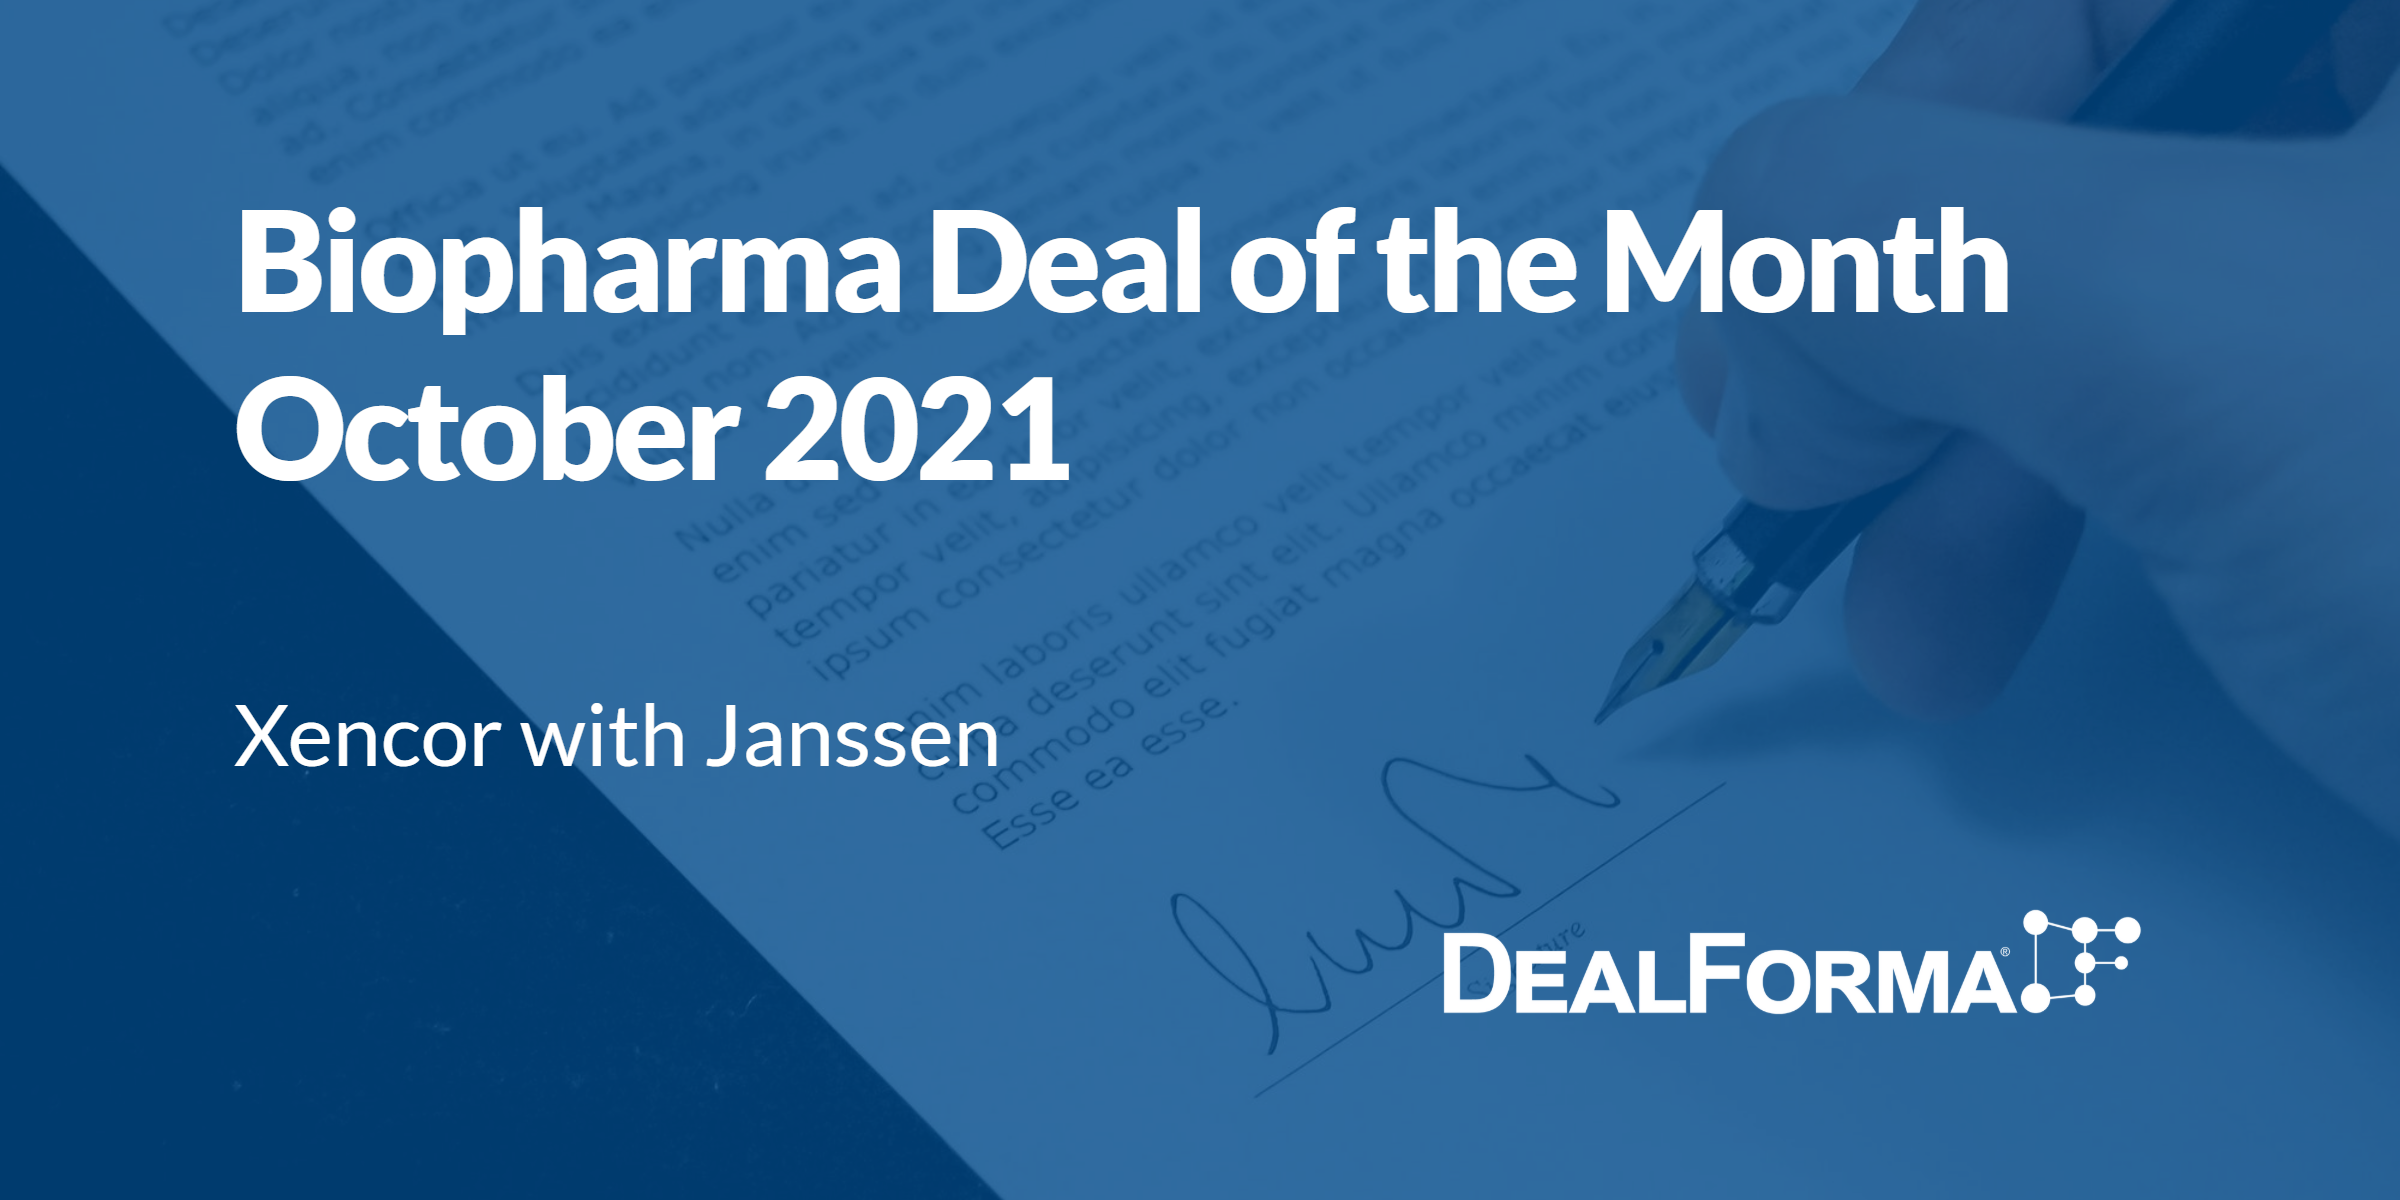 Top biopharma deal upfront October 2021